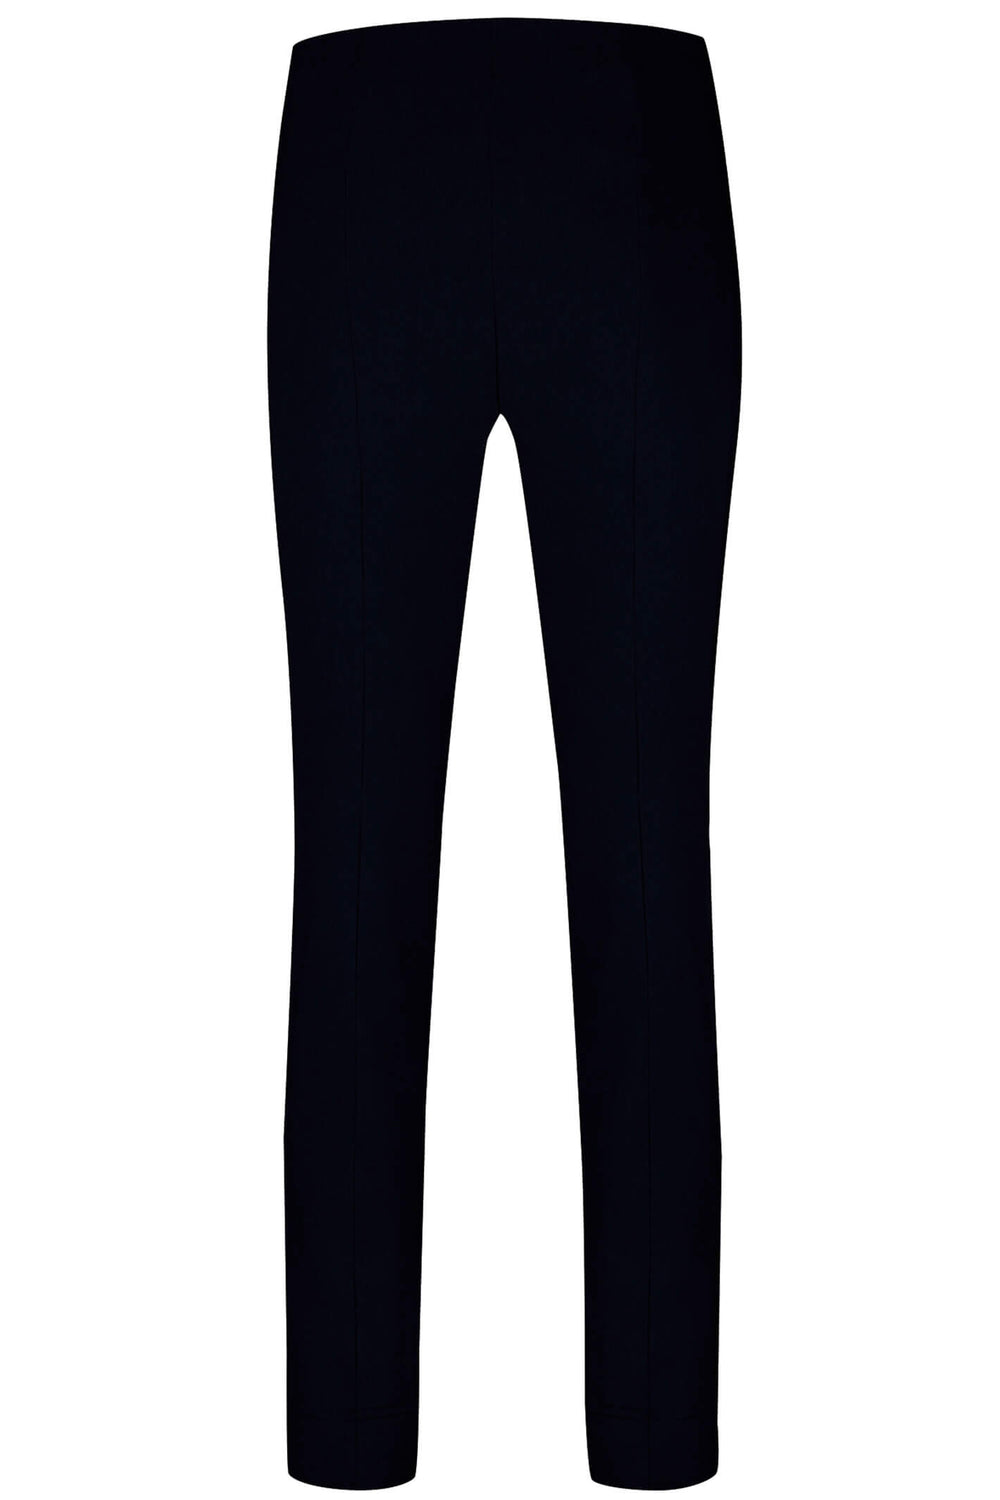 Robell 51673-5499-90 Rose Black Full Length Slim Fit Trousers - Dotique